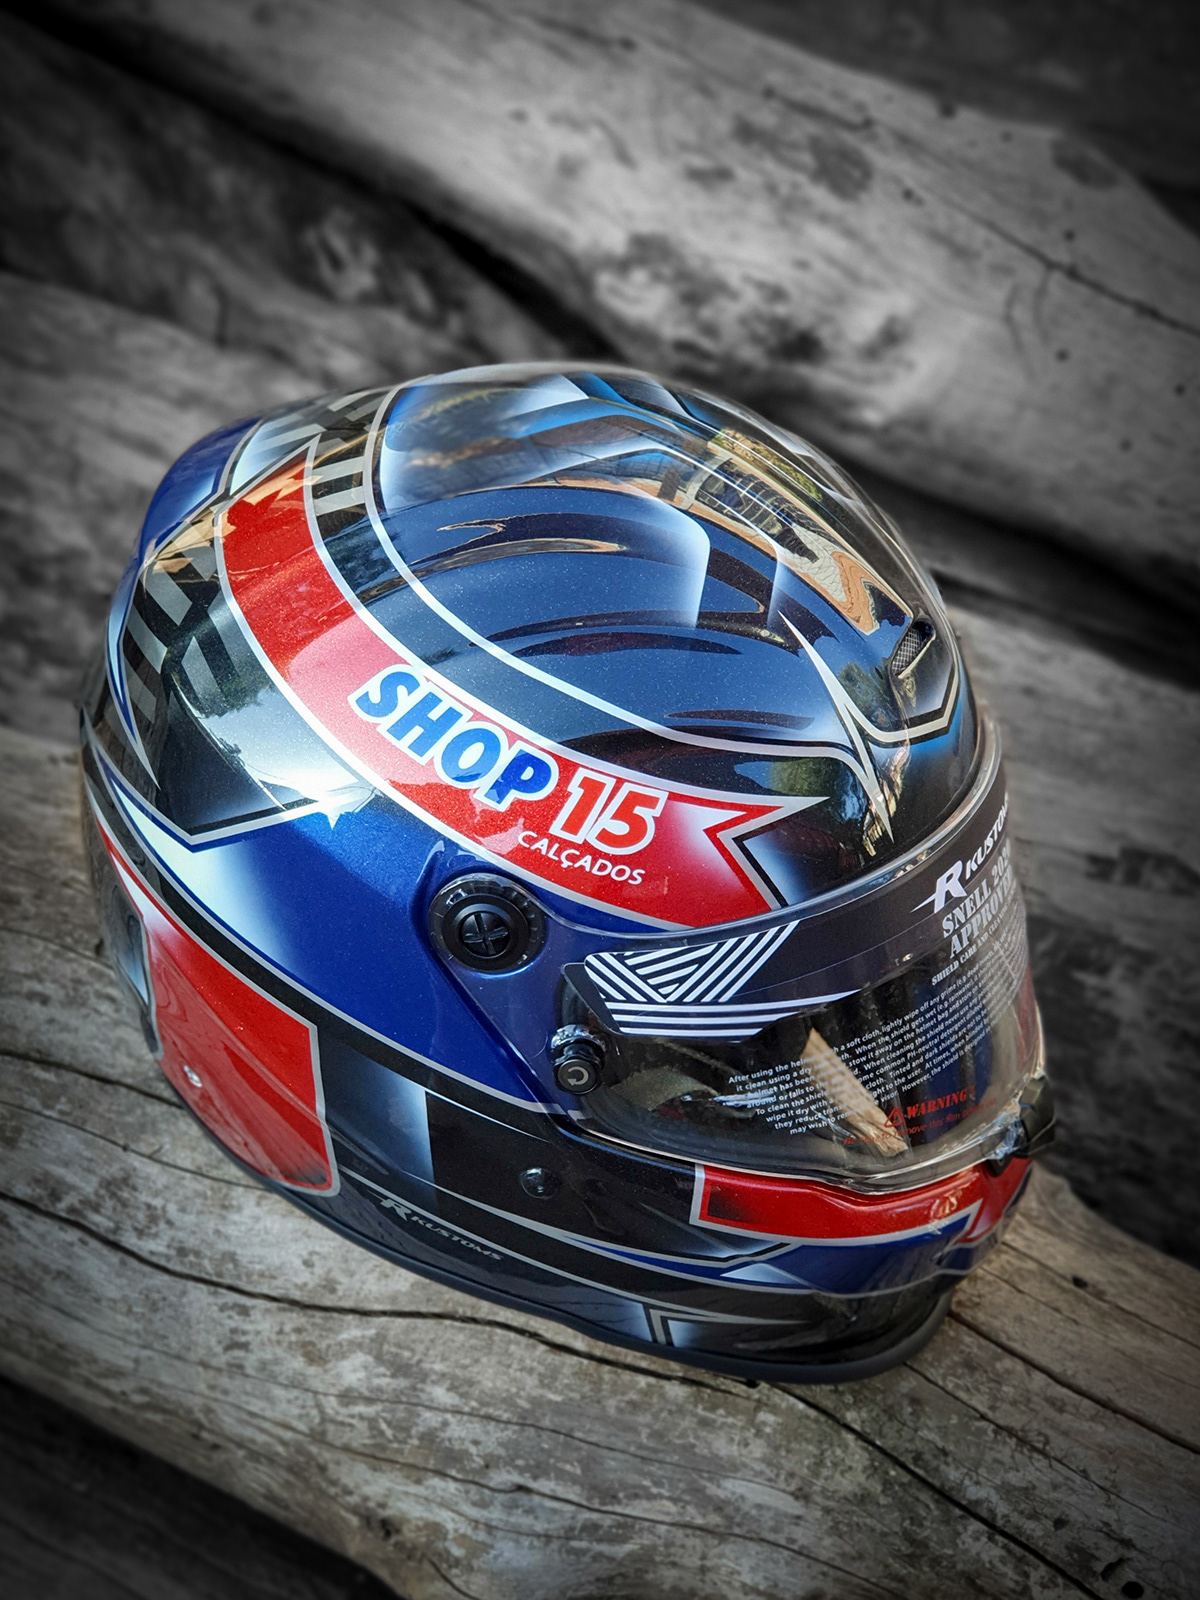 helmetpaint helmetdesign custompaint Brettkingdesign customhelmet Motorsport Formula 1